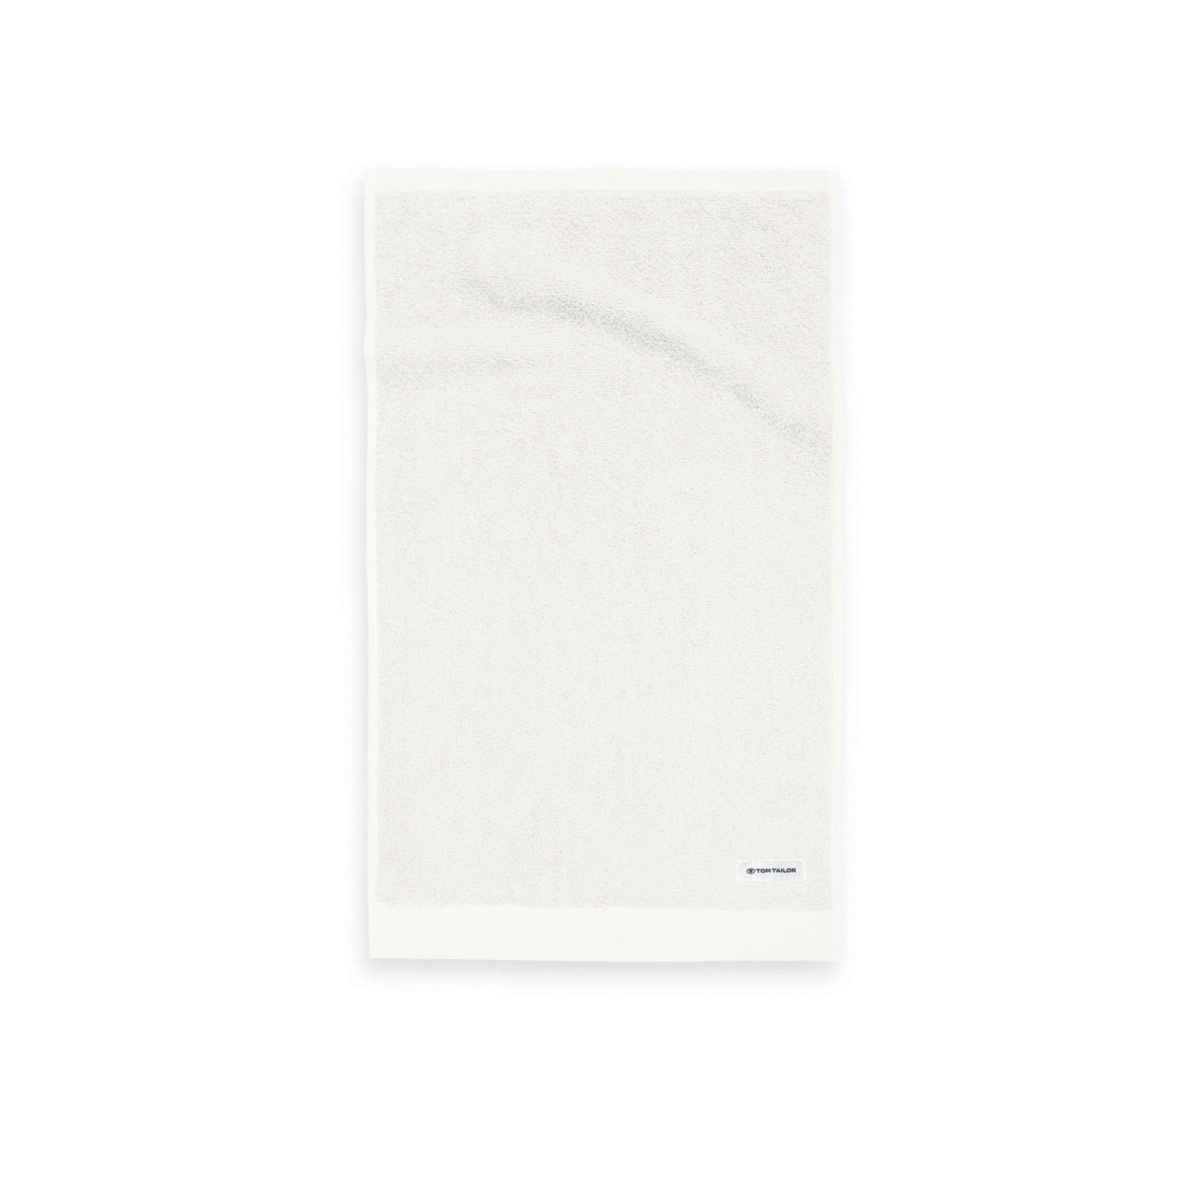 Tom Tailor Crisp White törölköző, 30 x 50 cm